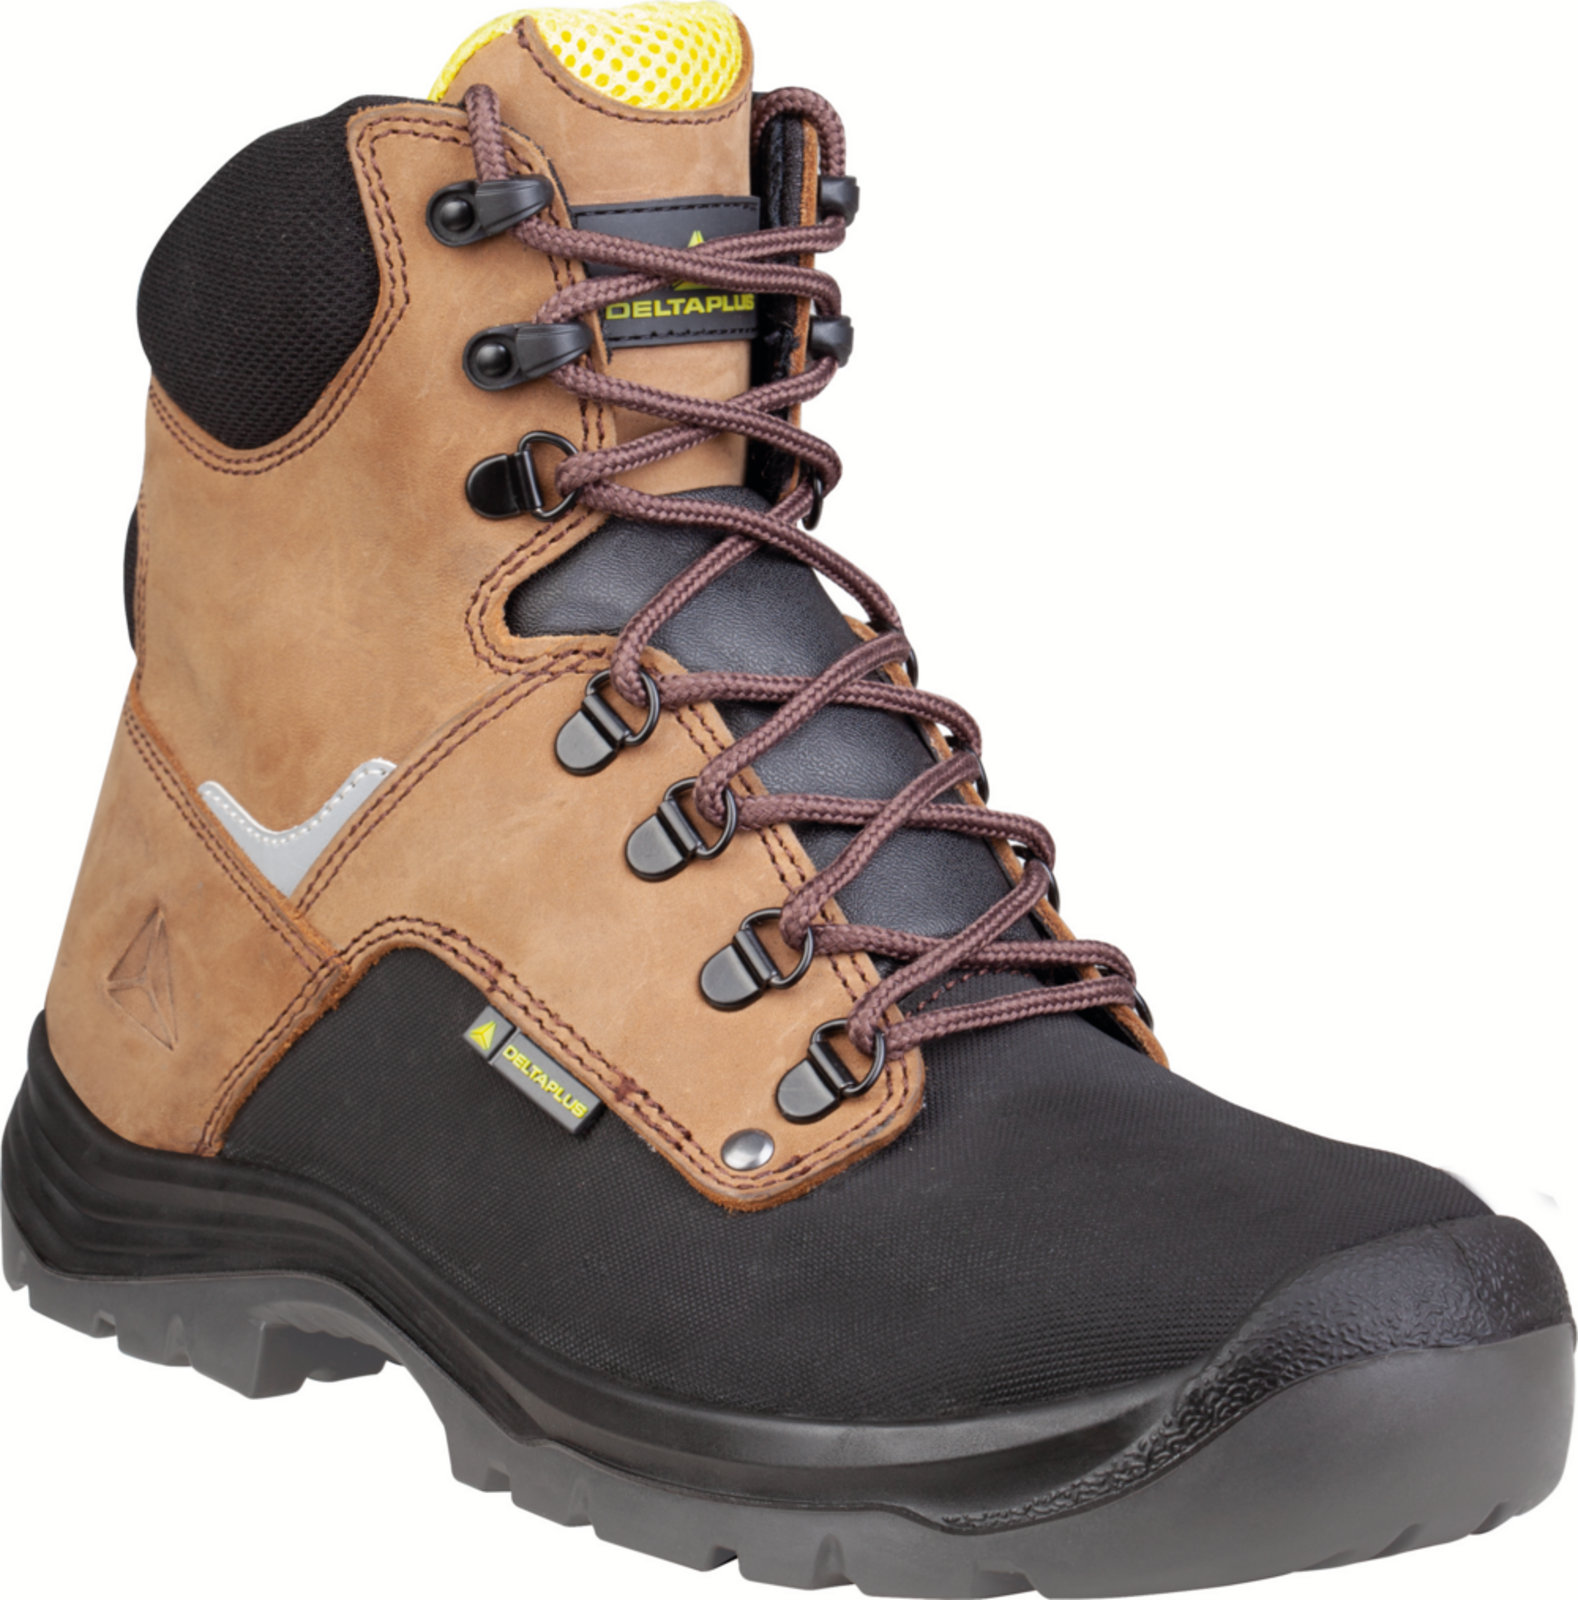 Vysoká bezpečnostná obuv Delta Plus Atacama S3 - veľkosť: 44, farba: hnedá/čierna